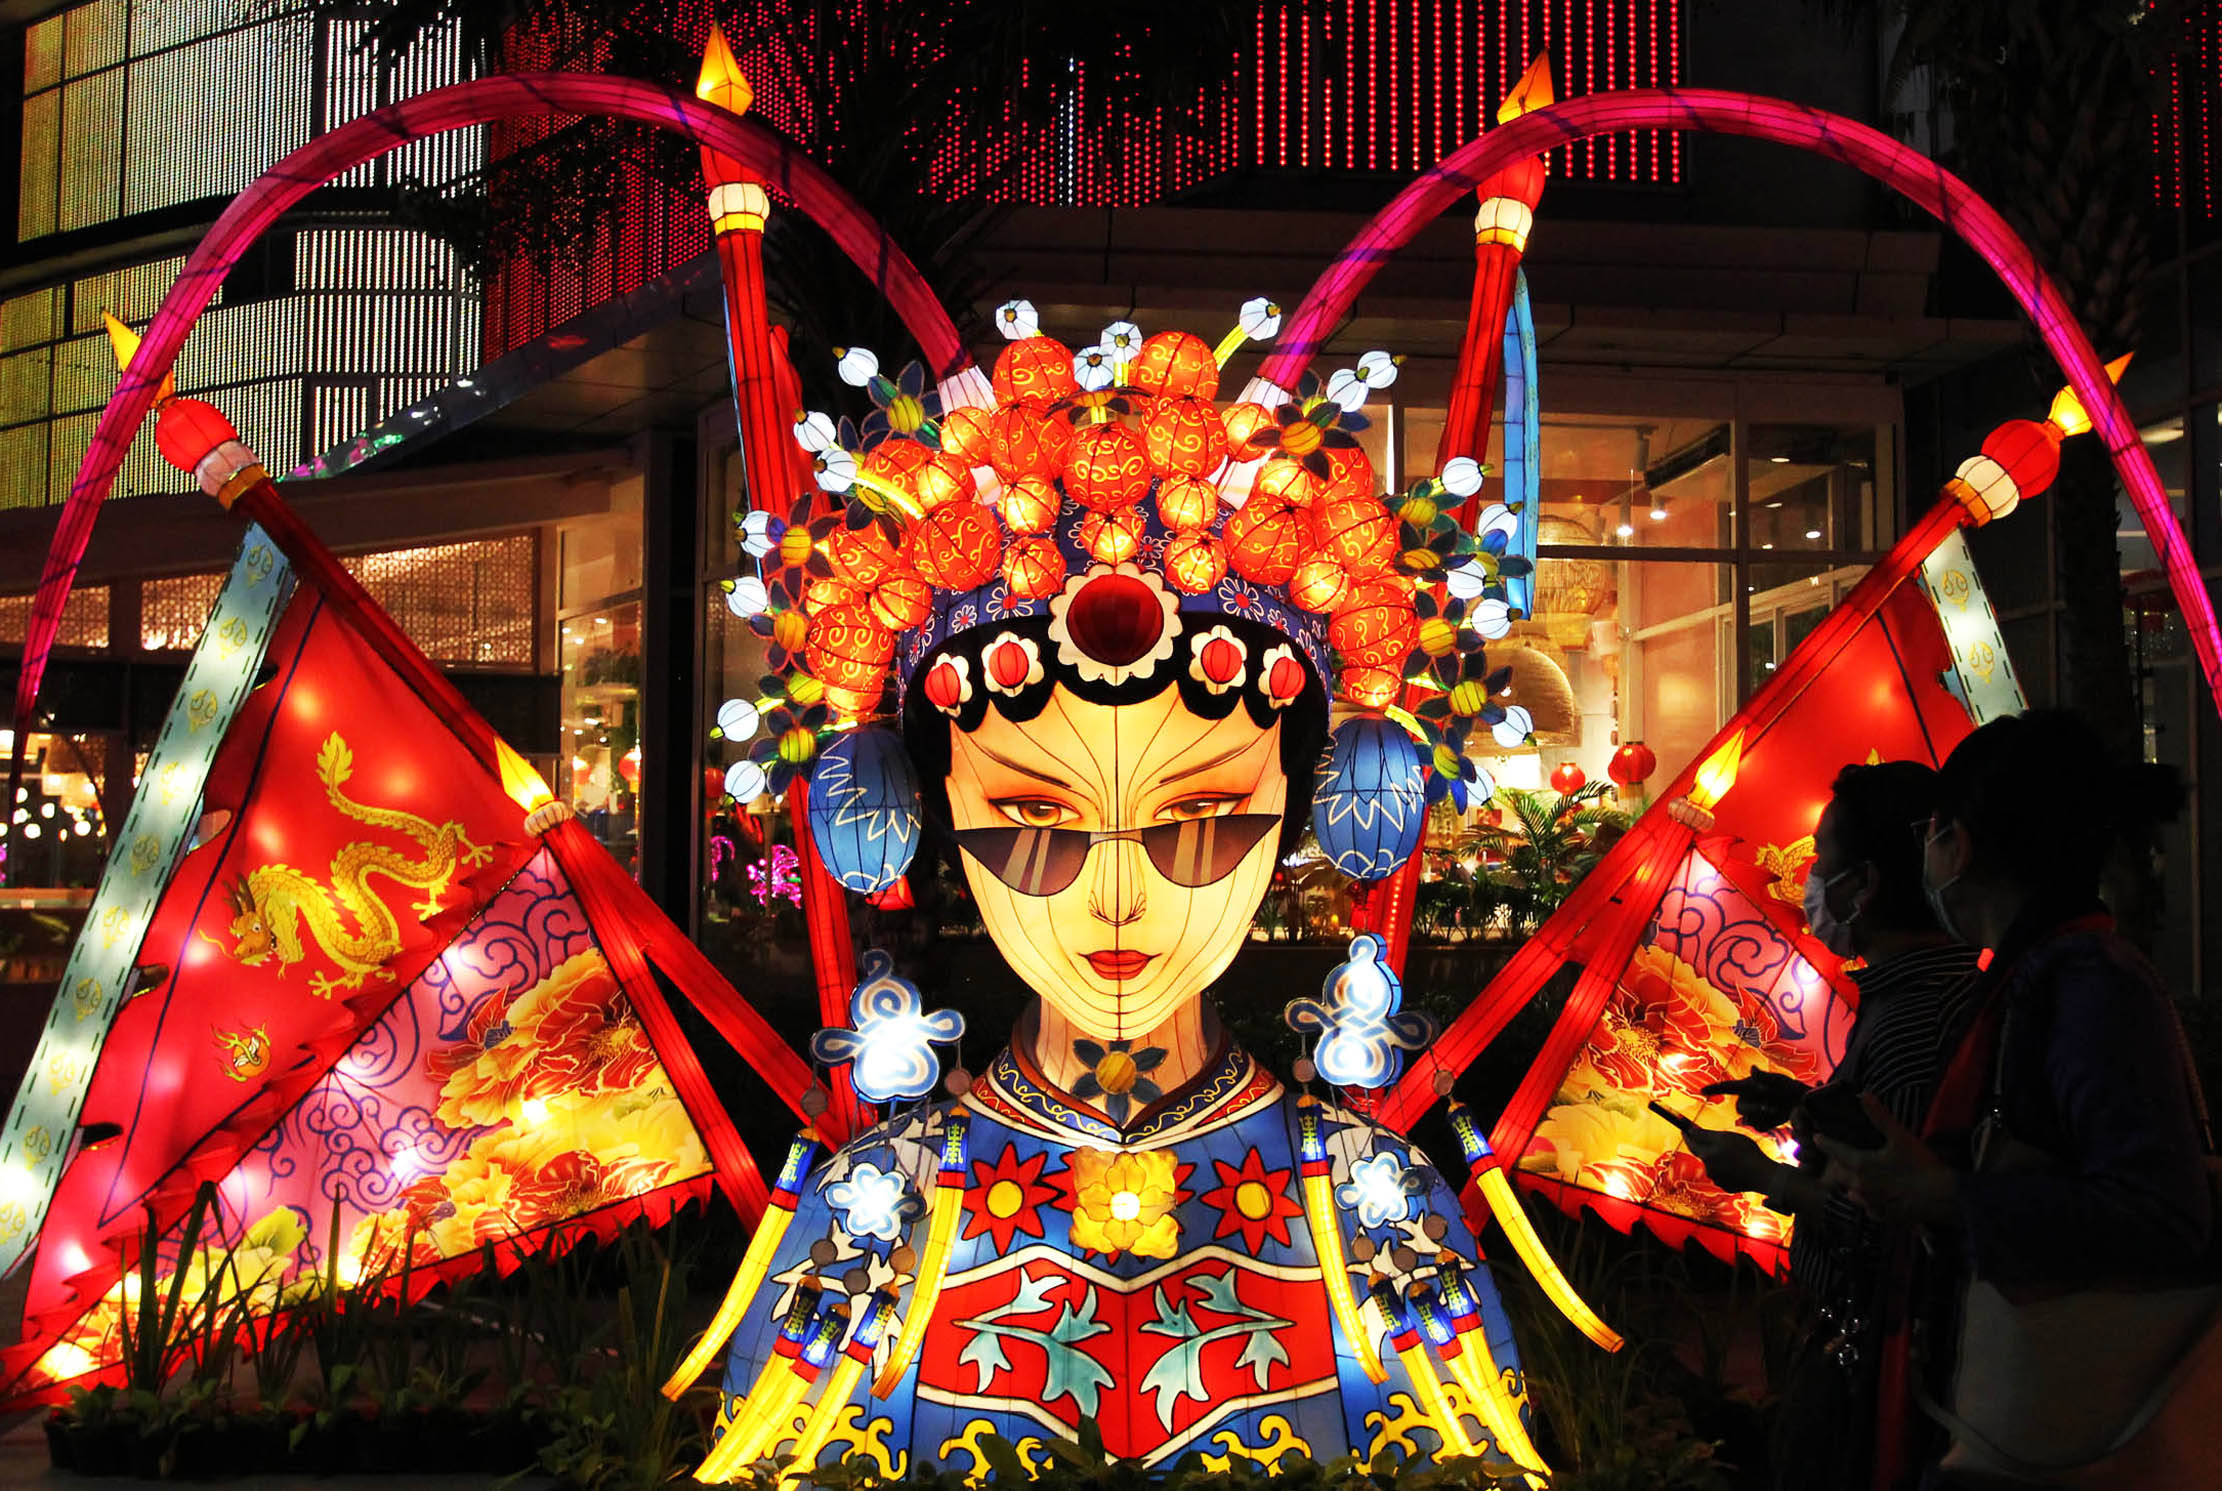 Pengunjung tengah menikmati deretan lampion dengan berbagai macam ukuran dan bentuk menarik dalam Festival Lampion yang berlangsung di Mal Living World Tangerang, Sabtu 21 Januari 2023. Foto : Panji Asmoro/TrenAsia